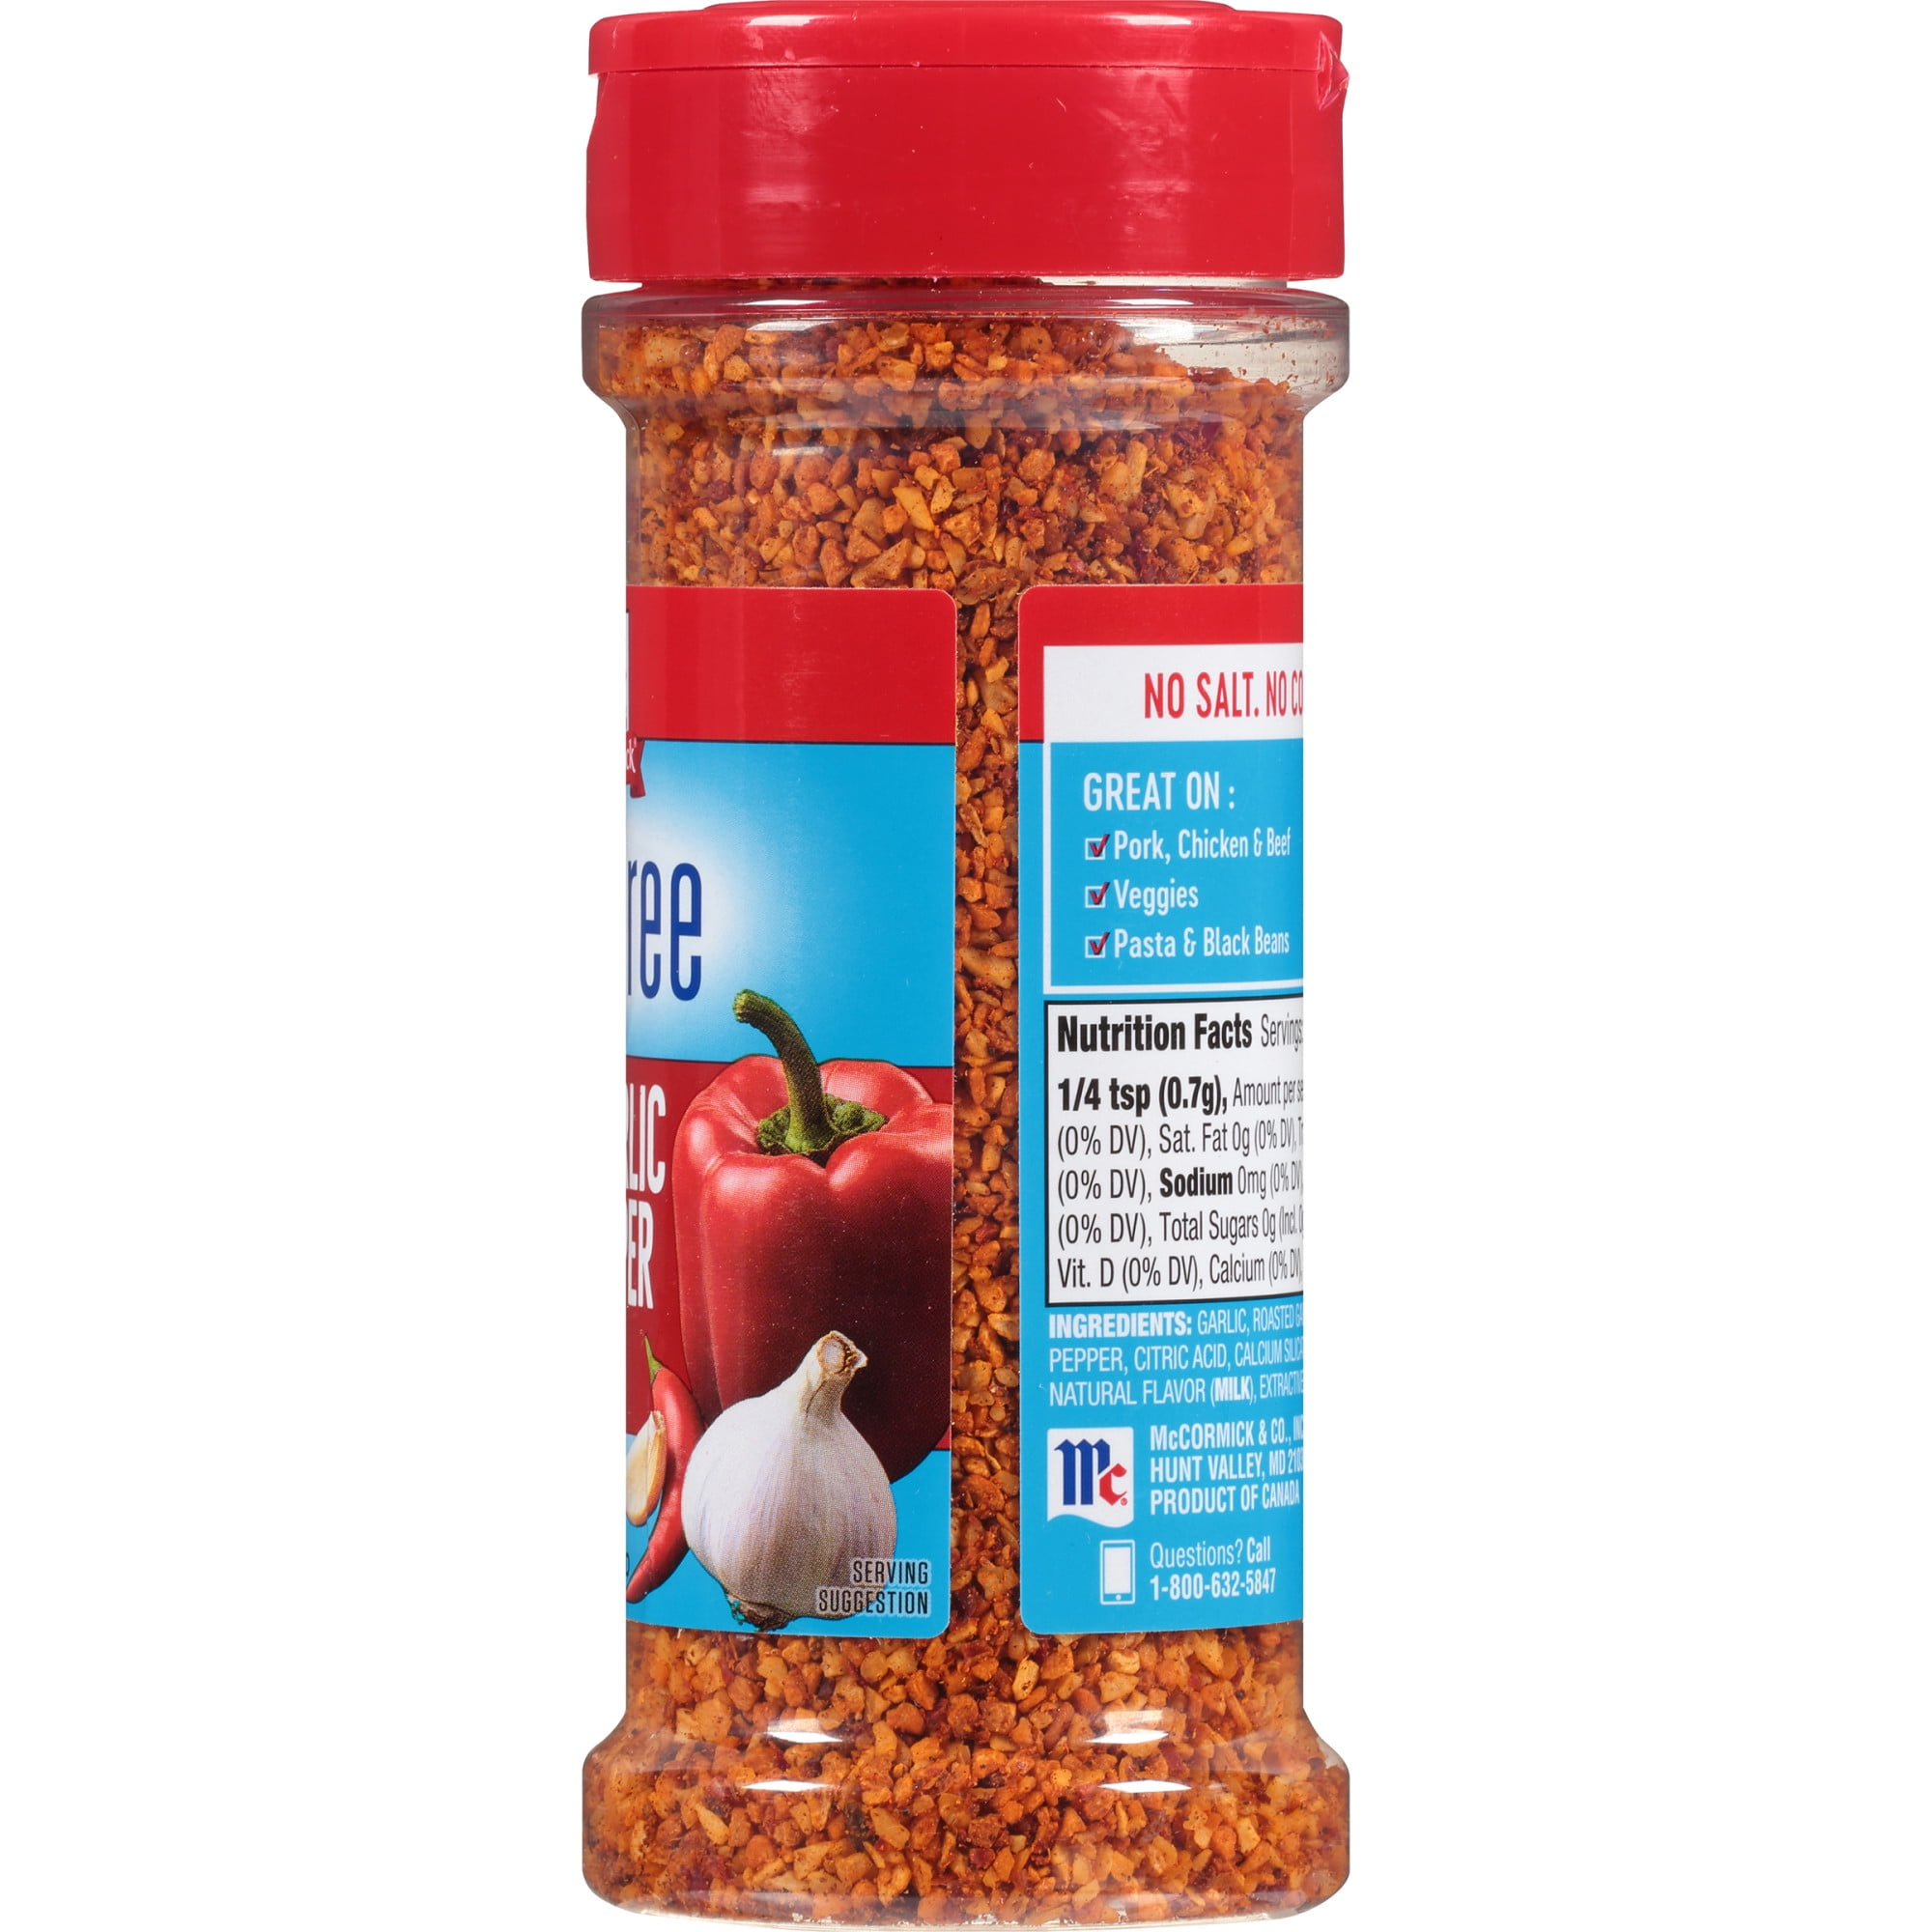 Red Pepper Seasoning Salt